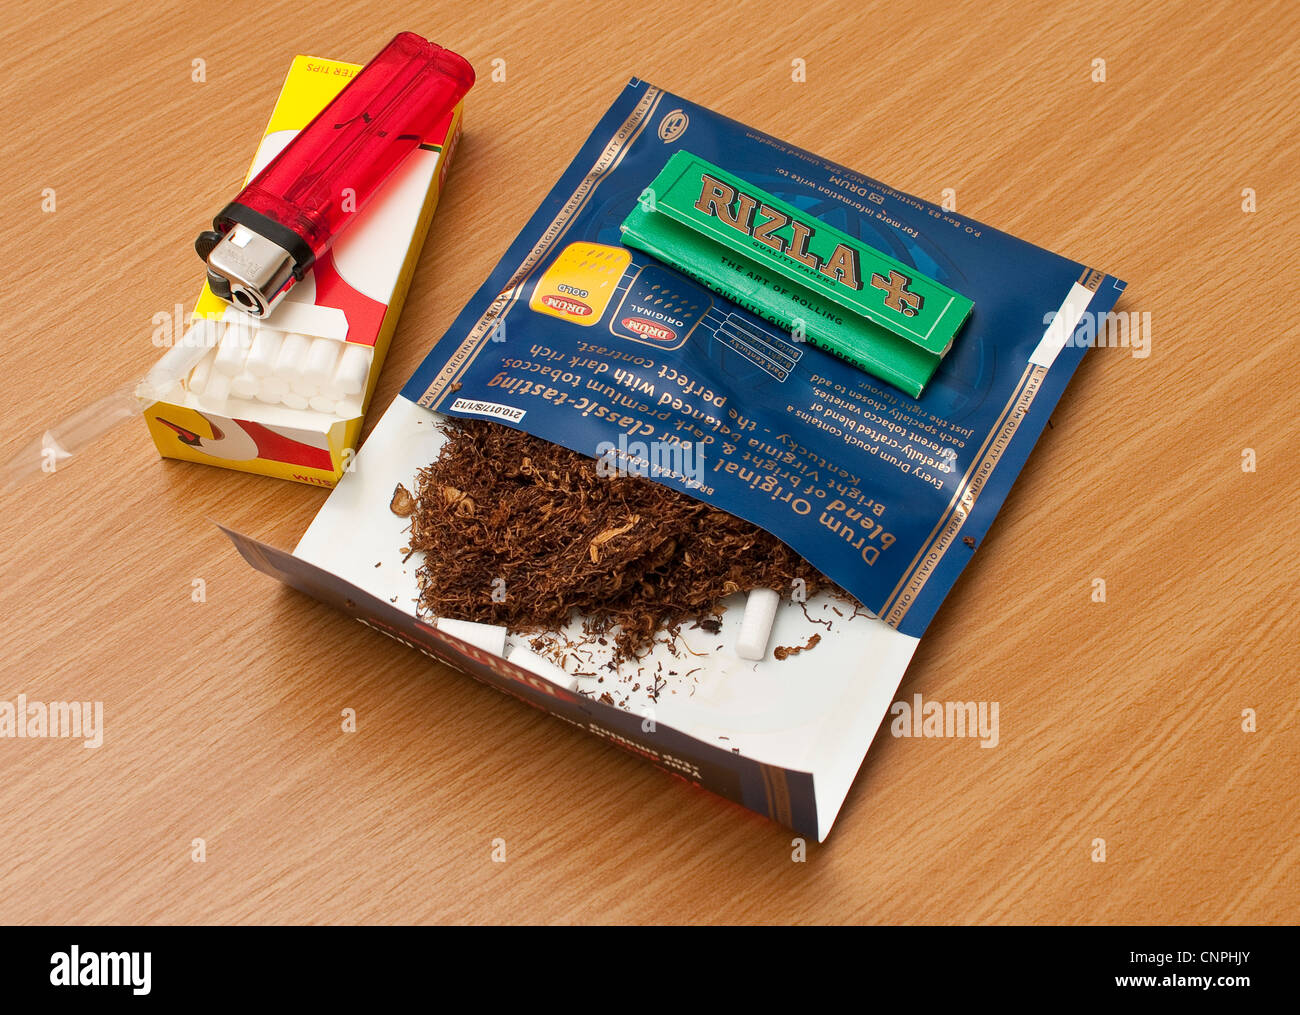 El tabaco de liar filtros Rizla Verde y ligero Fotografía de stock - Alamy